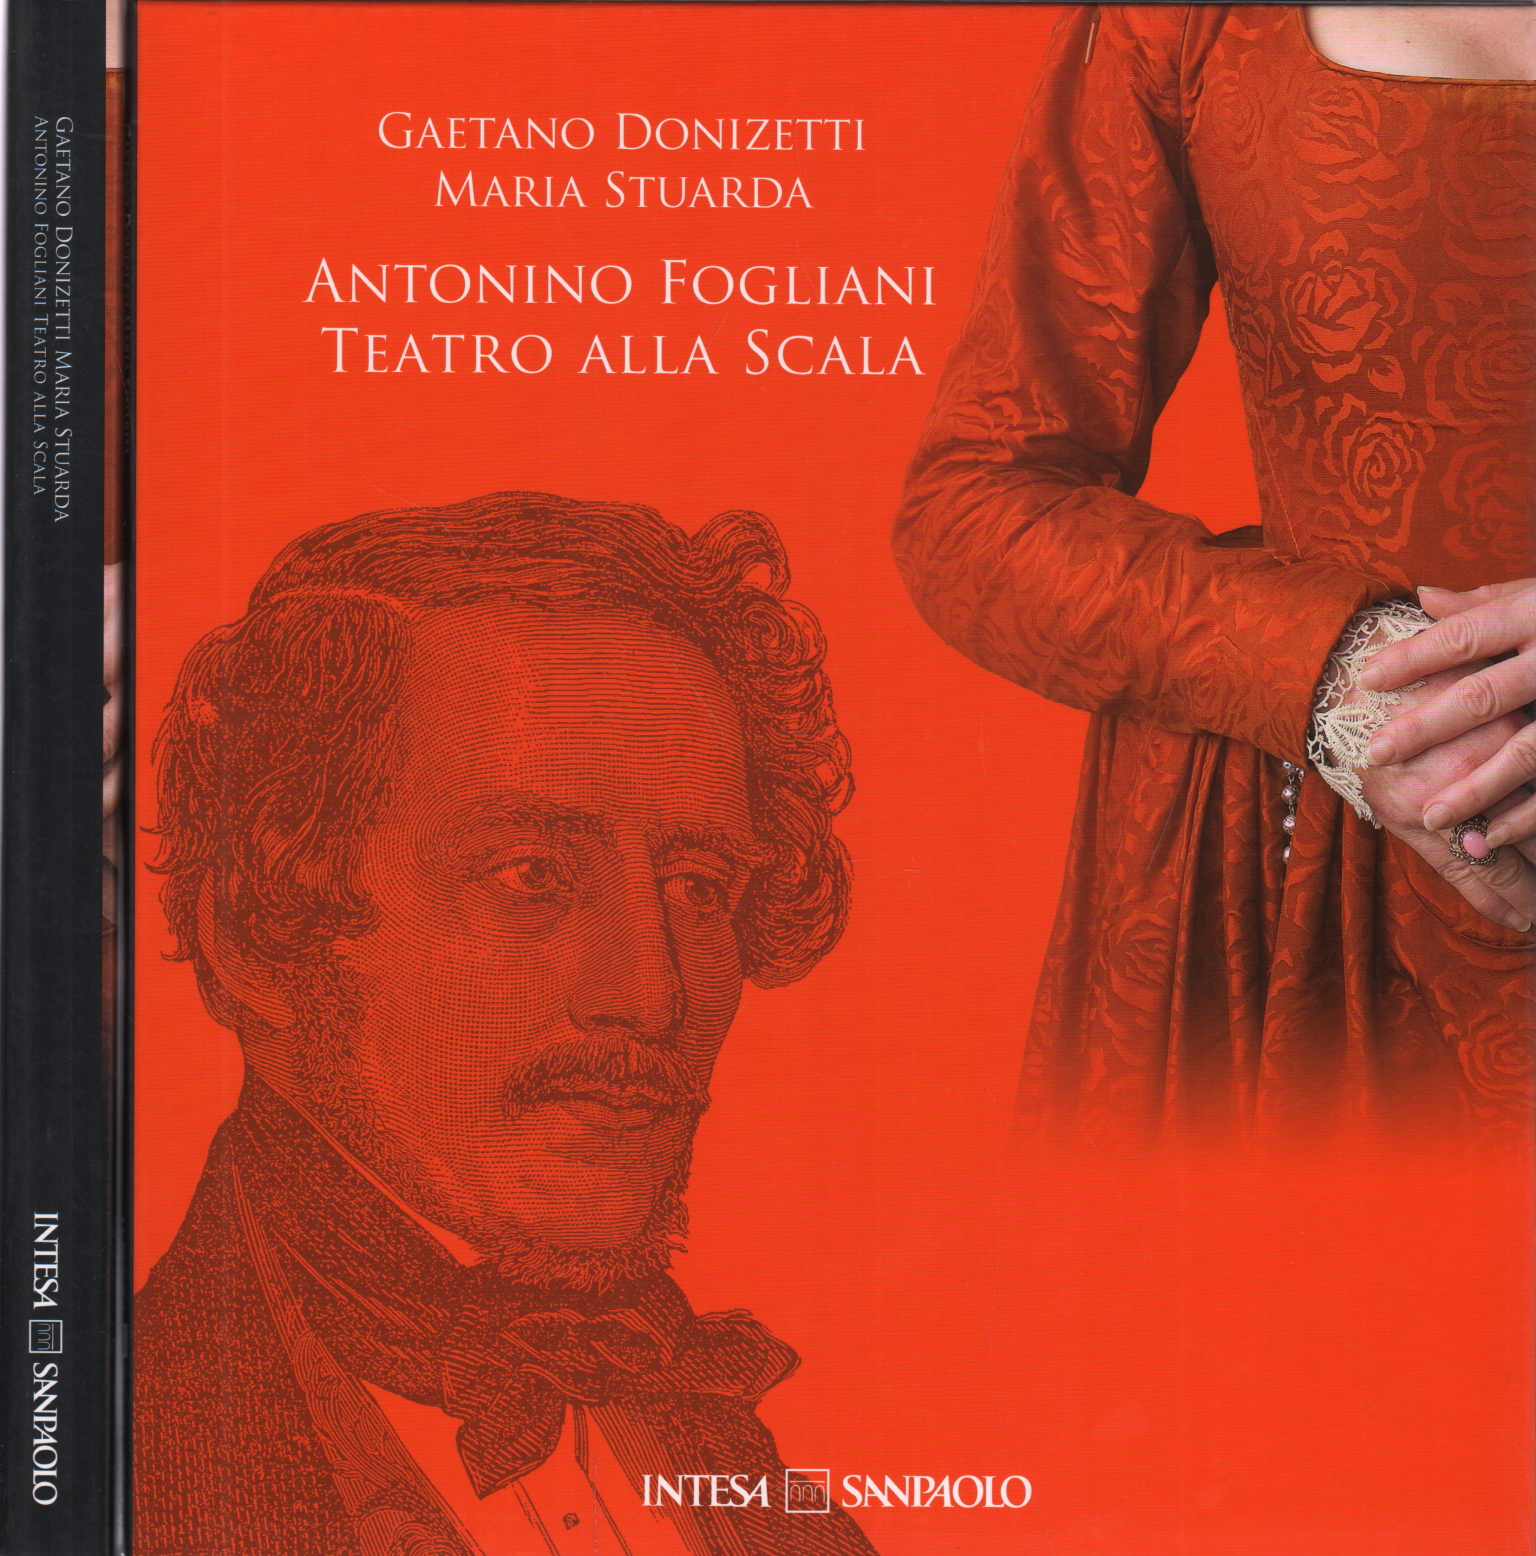 Gaetano Donizetti's "Maria Stuarda" Antonino Leaf, Gaetano Donizetti